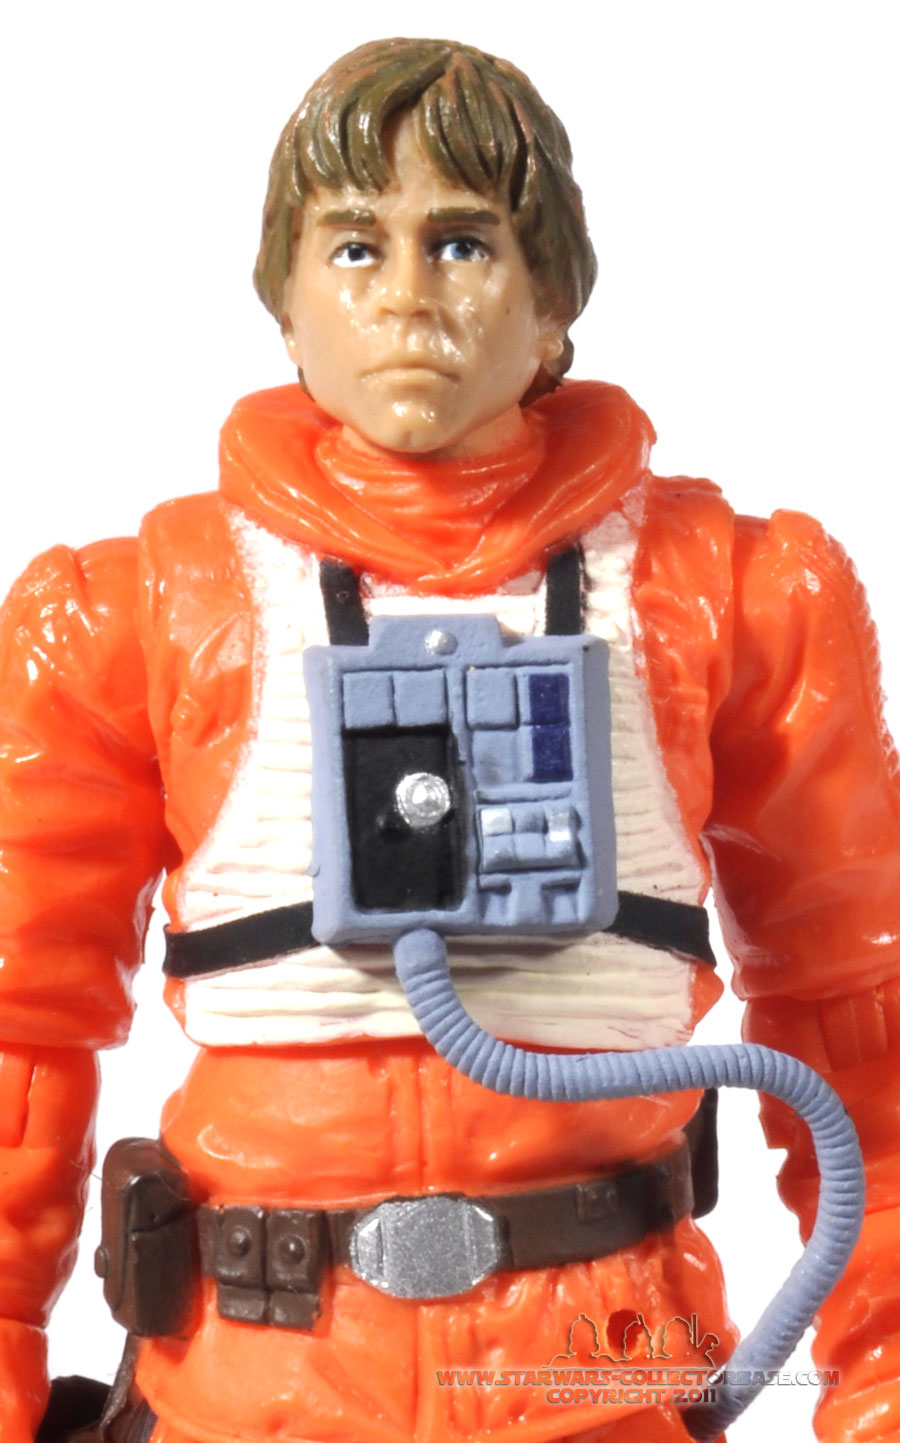 Luke Skywalker (Dagobah Landing) VC44 TVC